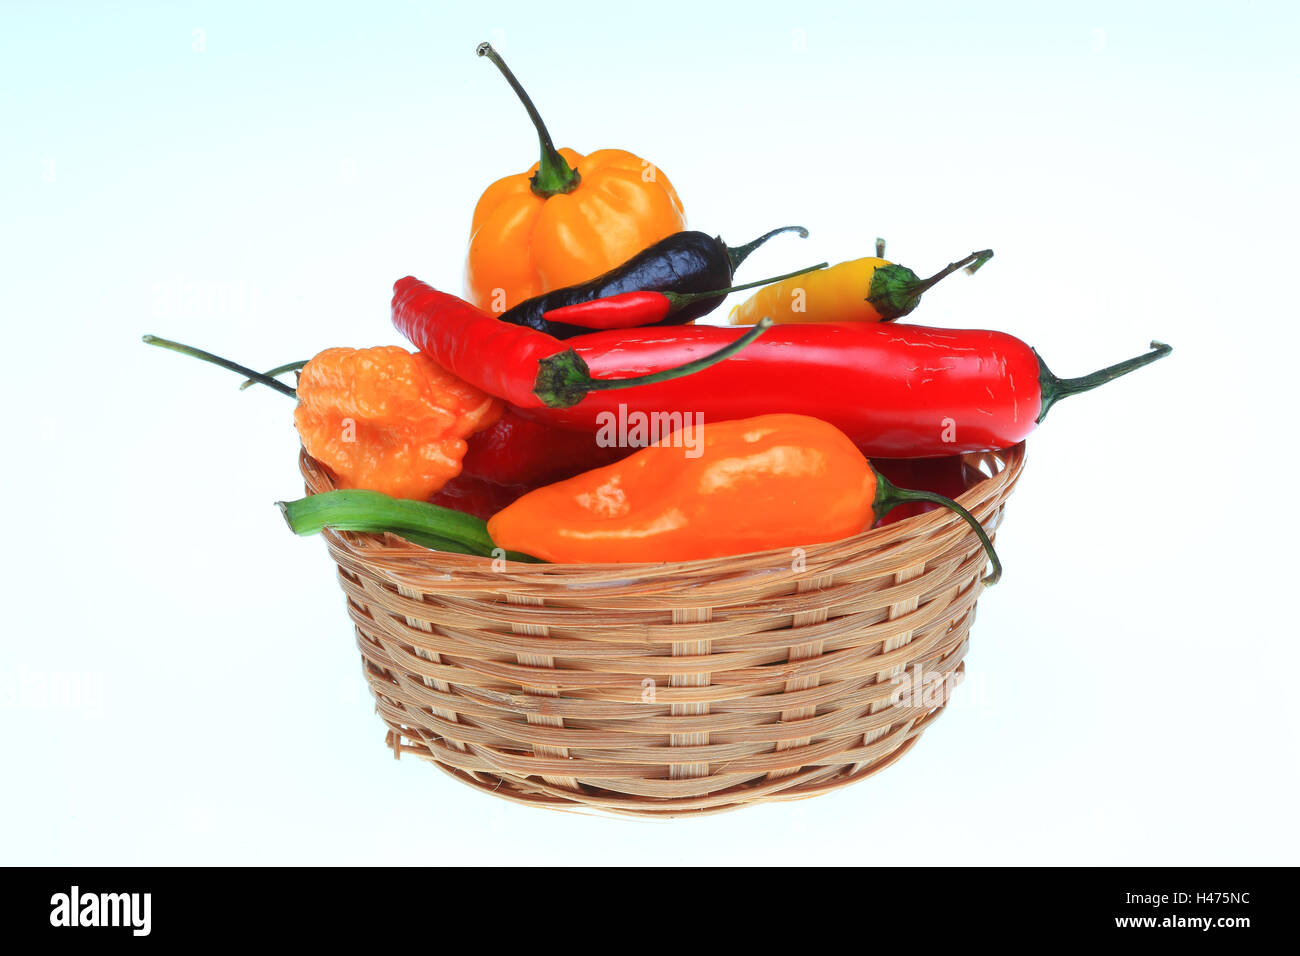 various, chili pepper, Capsicum annuum Stock Photo